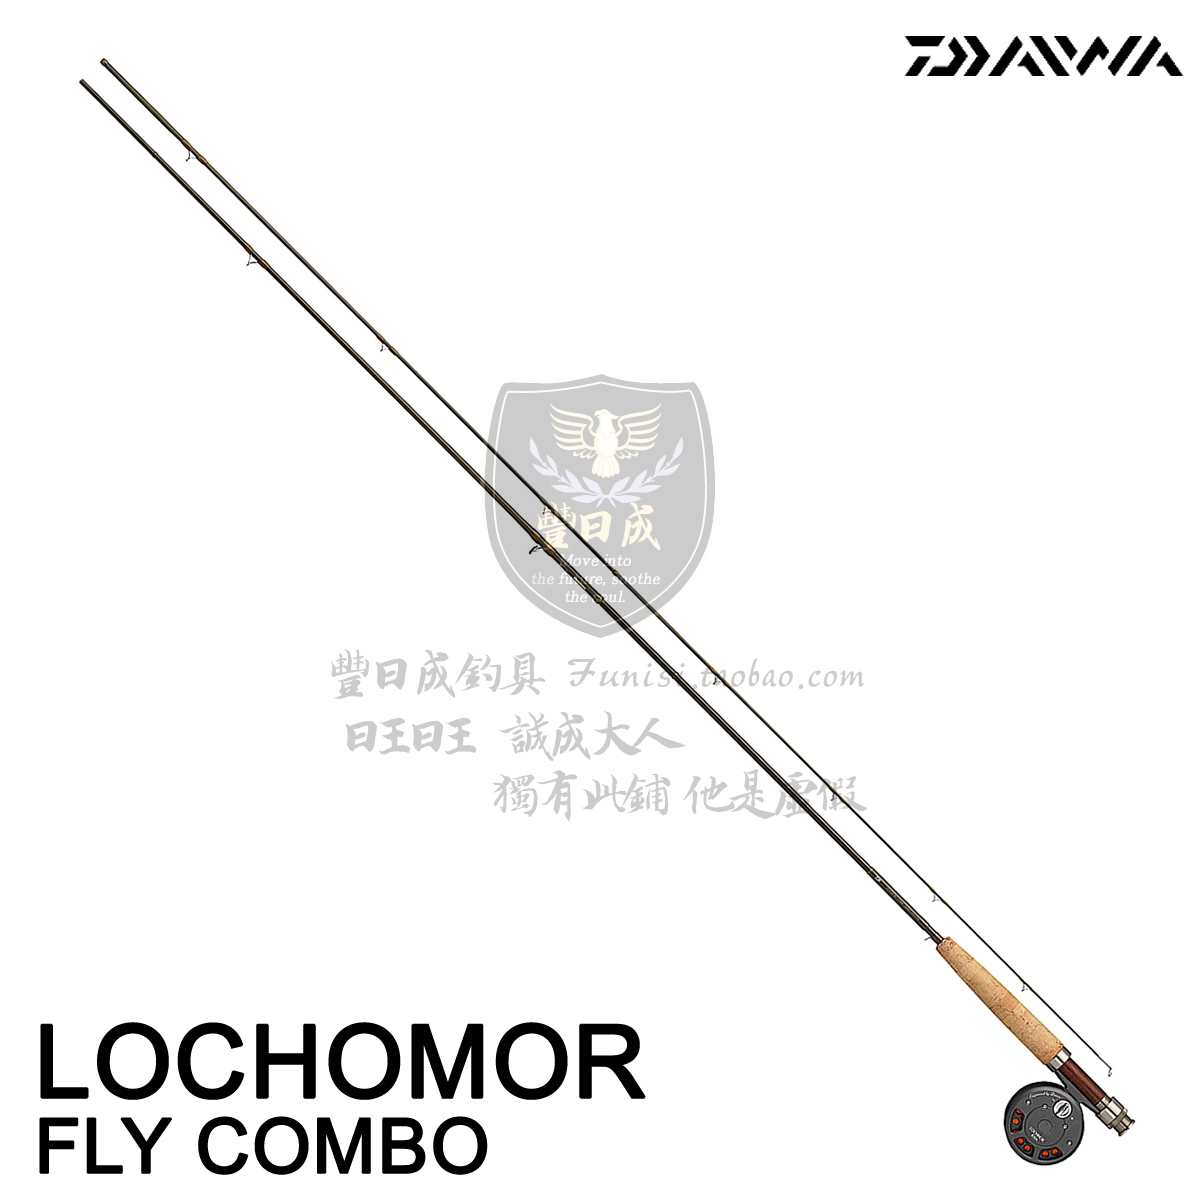 达亿瓦(Daiwa) LOCHOMOR FLY COMBO 飞蝇钓 飞钓竿连轮线套装图片